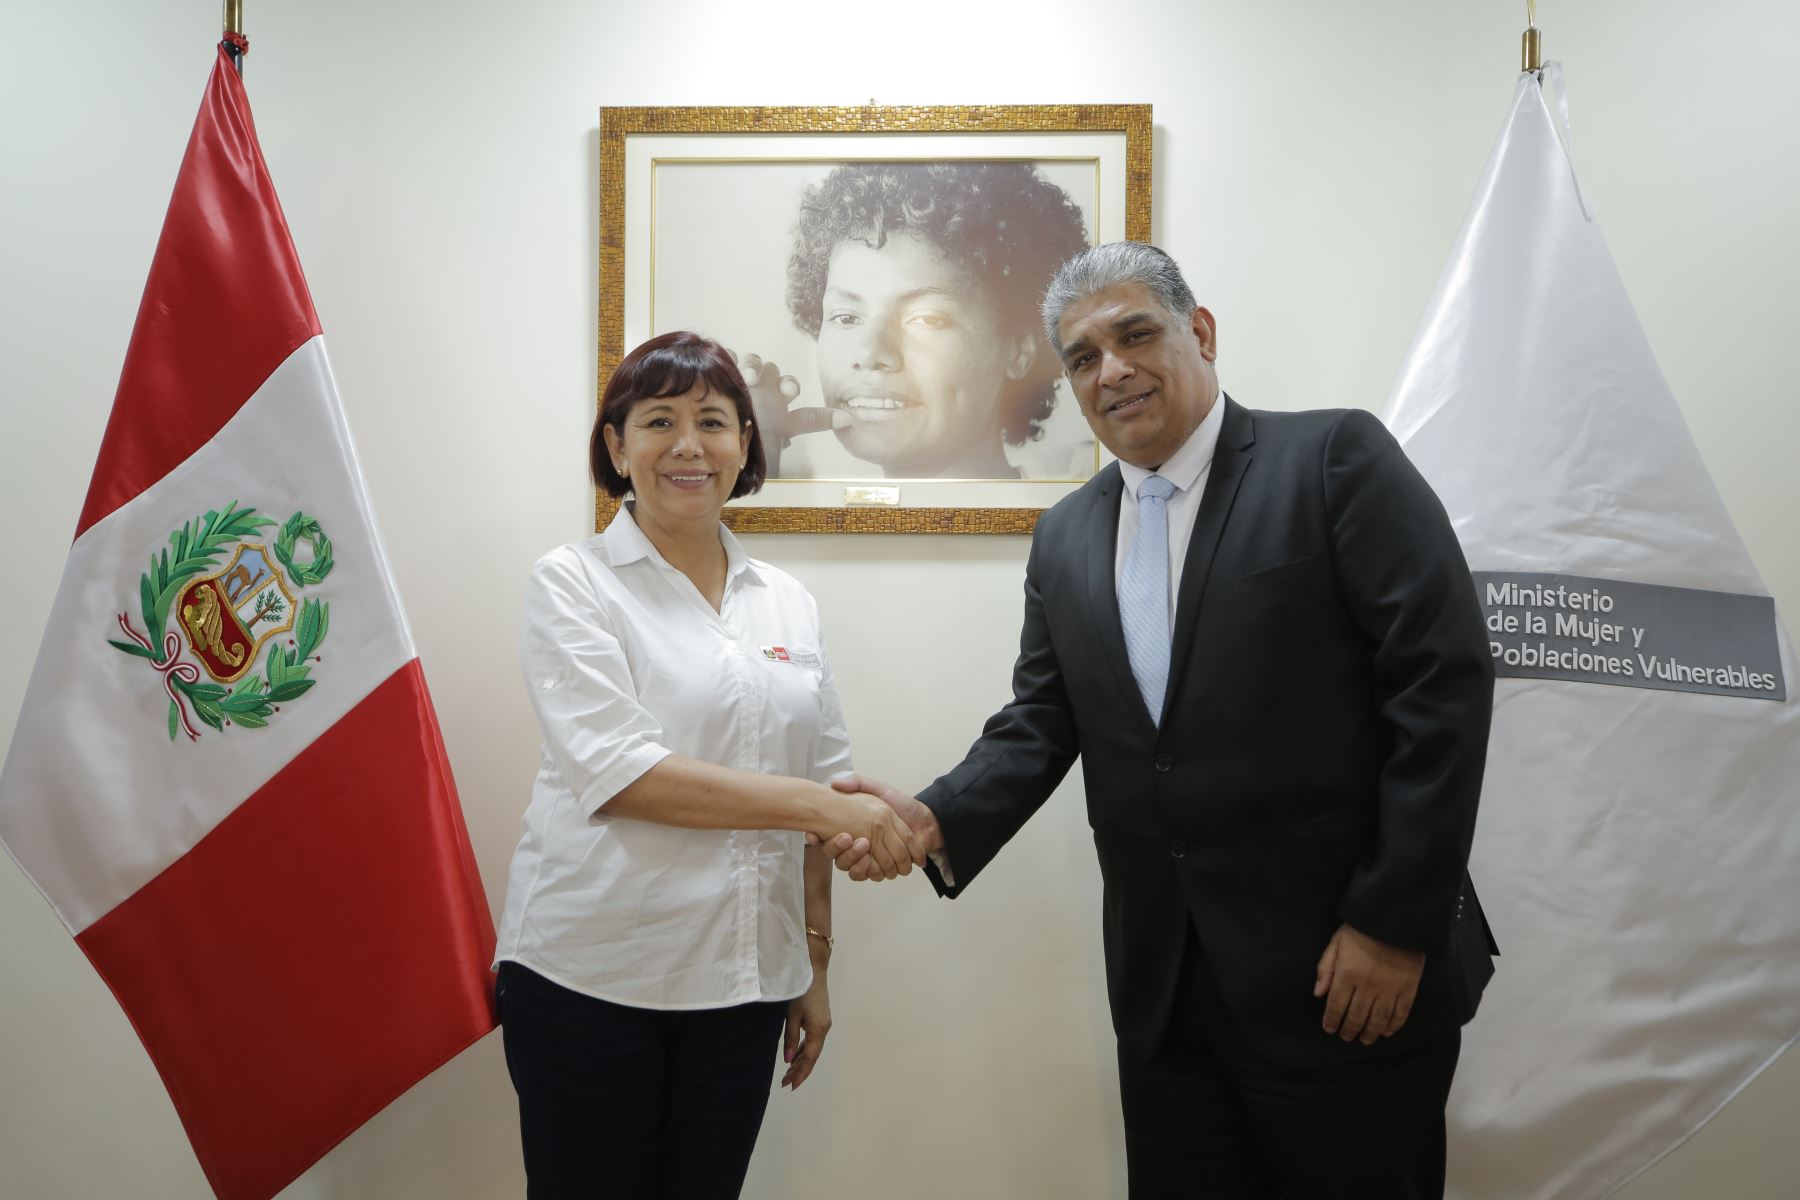 La ministra de la Mujer y Poblaciones Vulnerables, Nancy Tolentino Gamarra sostuvo una reunión ayer, con el superintendente de Migraciones, Armando García Chunga. ANDINA/Difusión